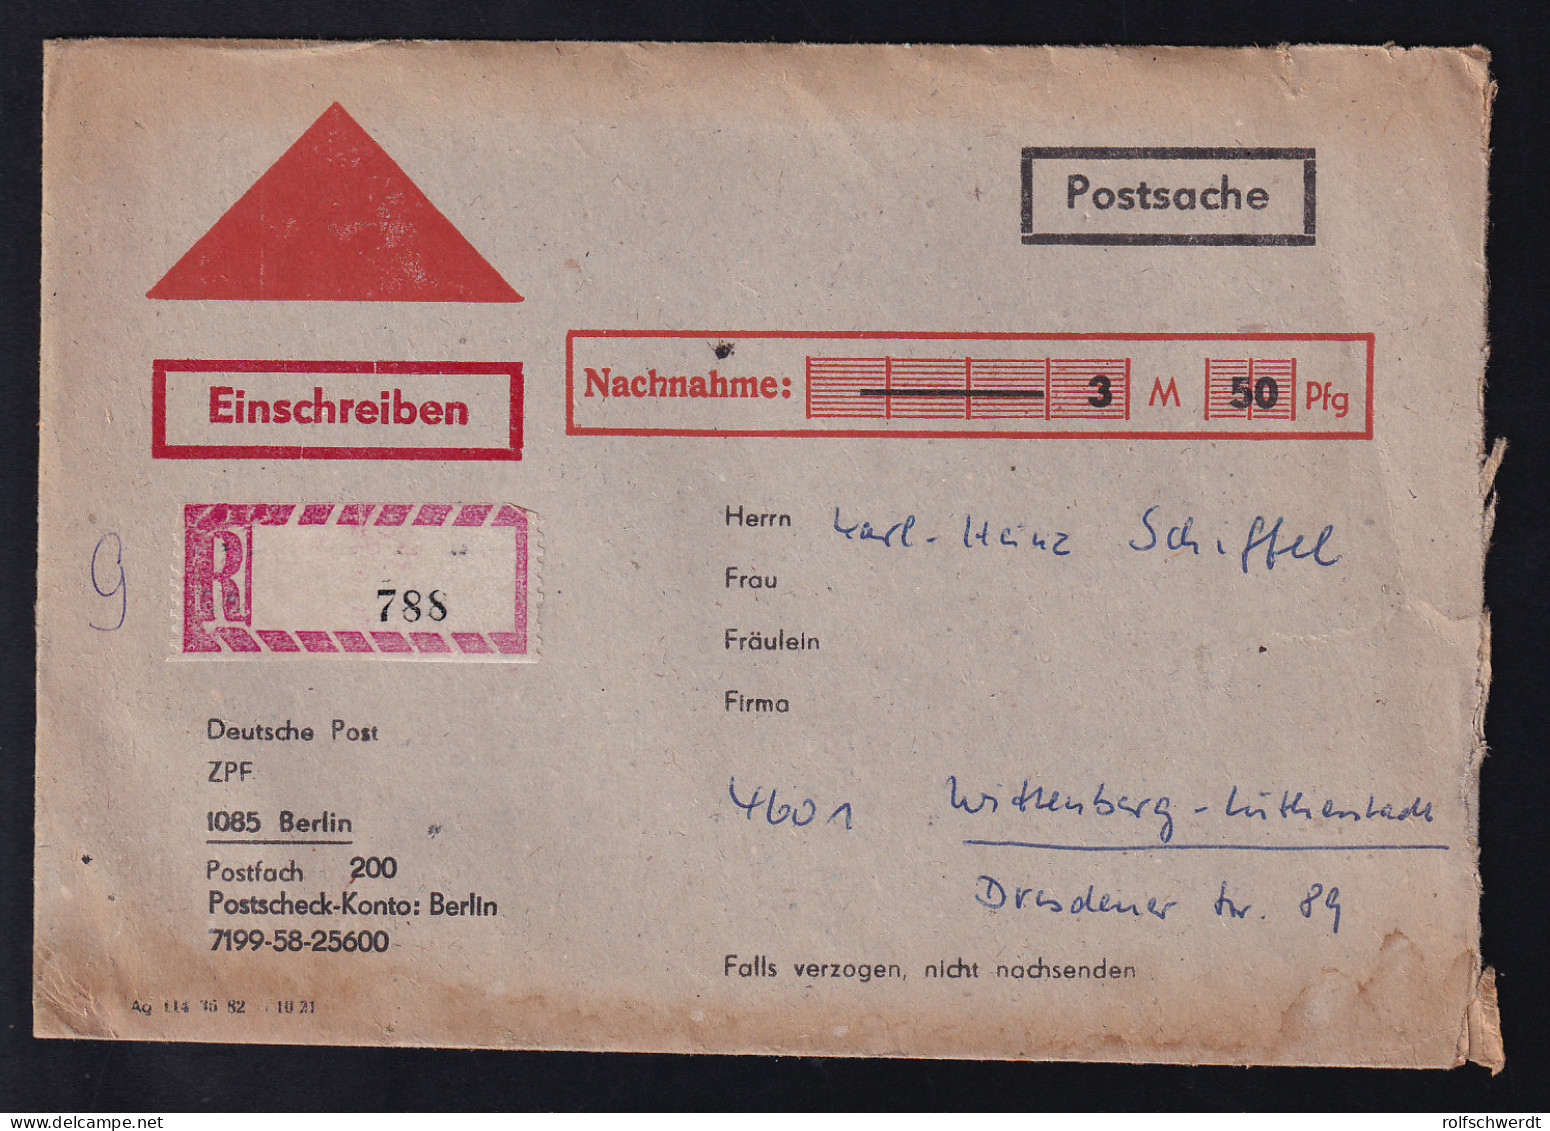 Nachnahme-R-Postsqache Der Deutschen Post ZPF 1085 Berlin - Post